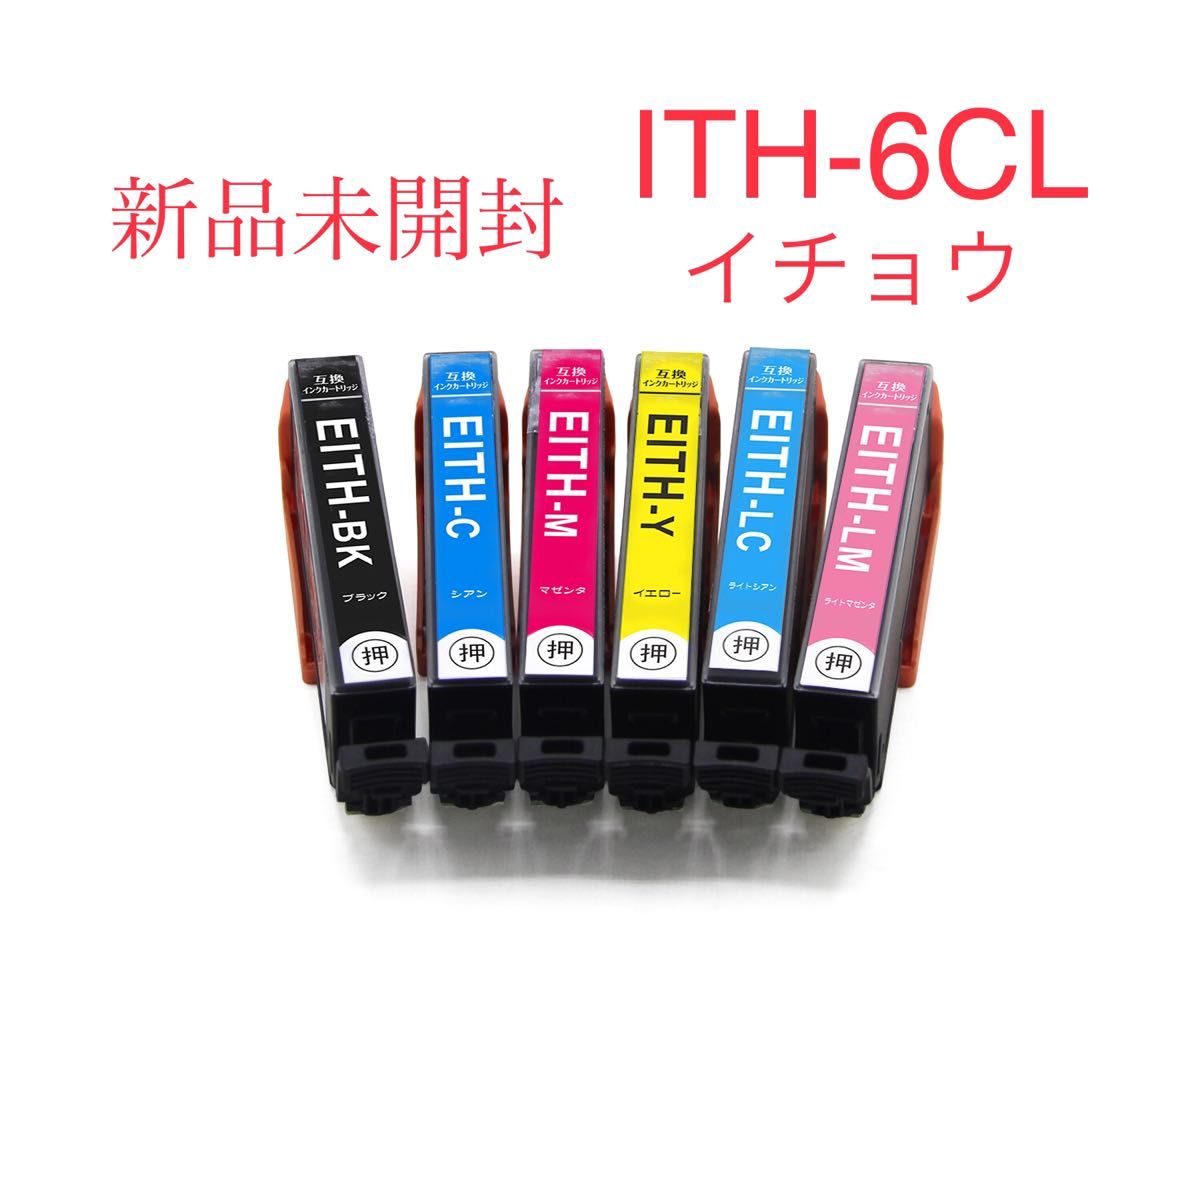 エプソン ITH-6CL (イチョウ)互換インク 6色セット インクカートリッジ